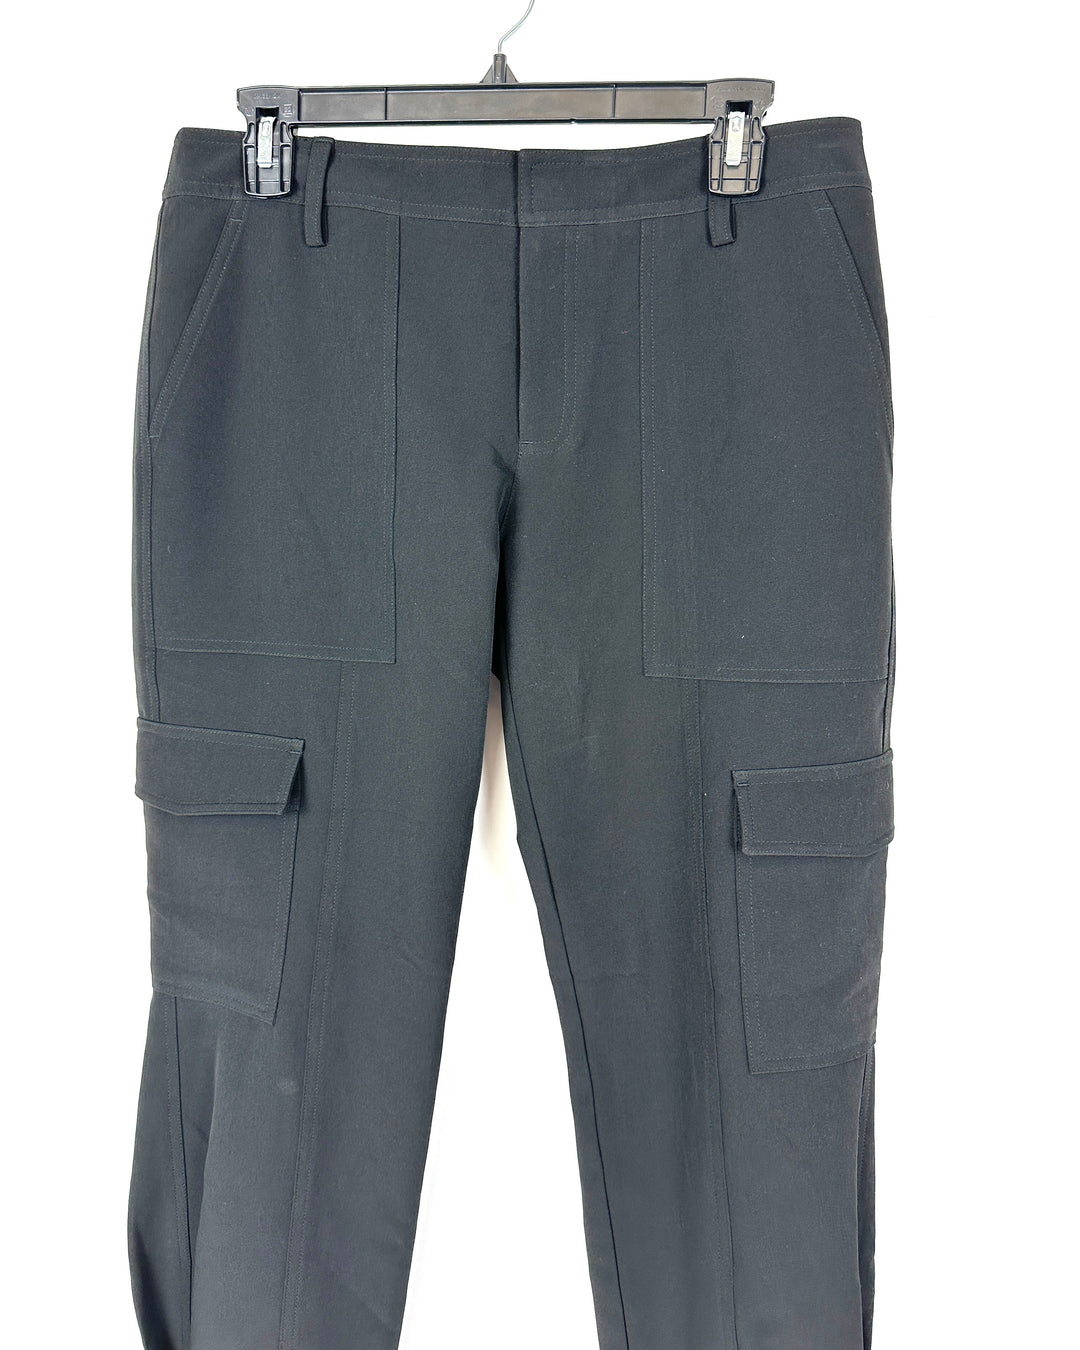 Black Capri Pants - Size 4-6